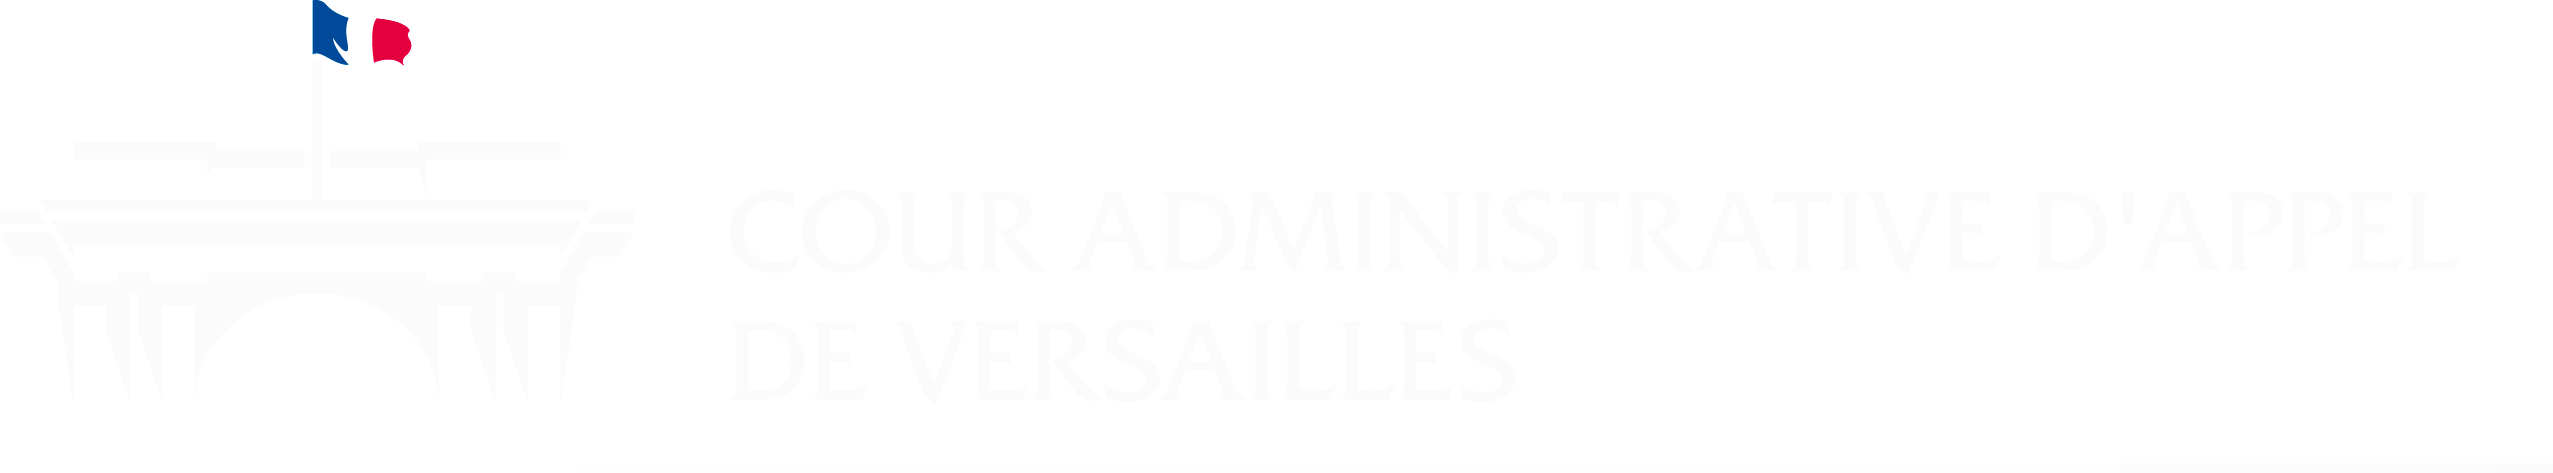 Cour administrative d'appel de Versailles - Retour à l'accueil